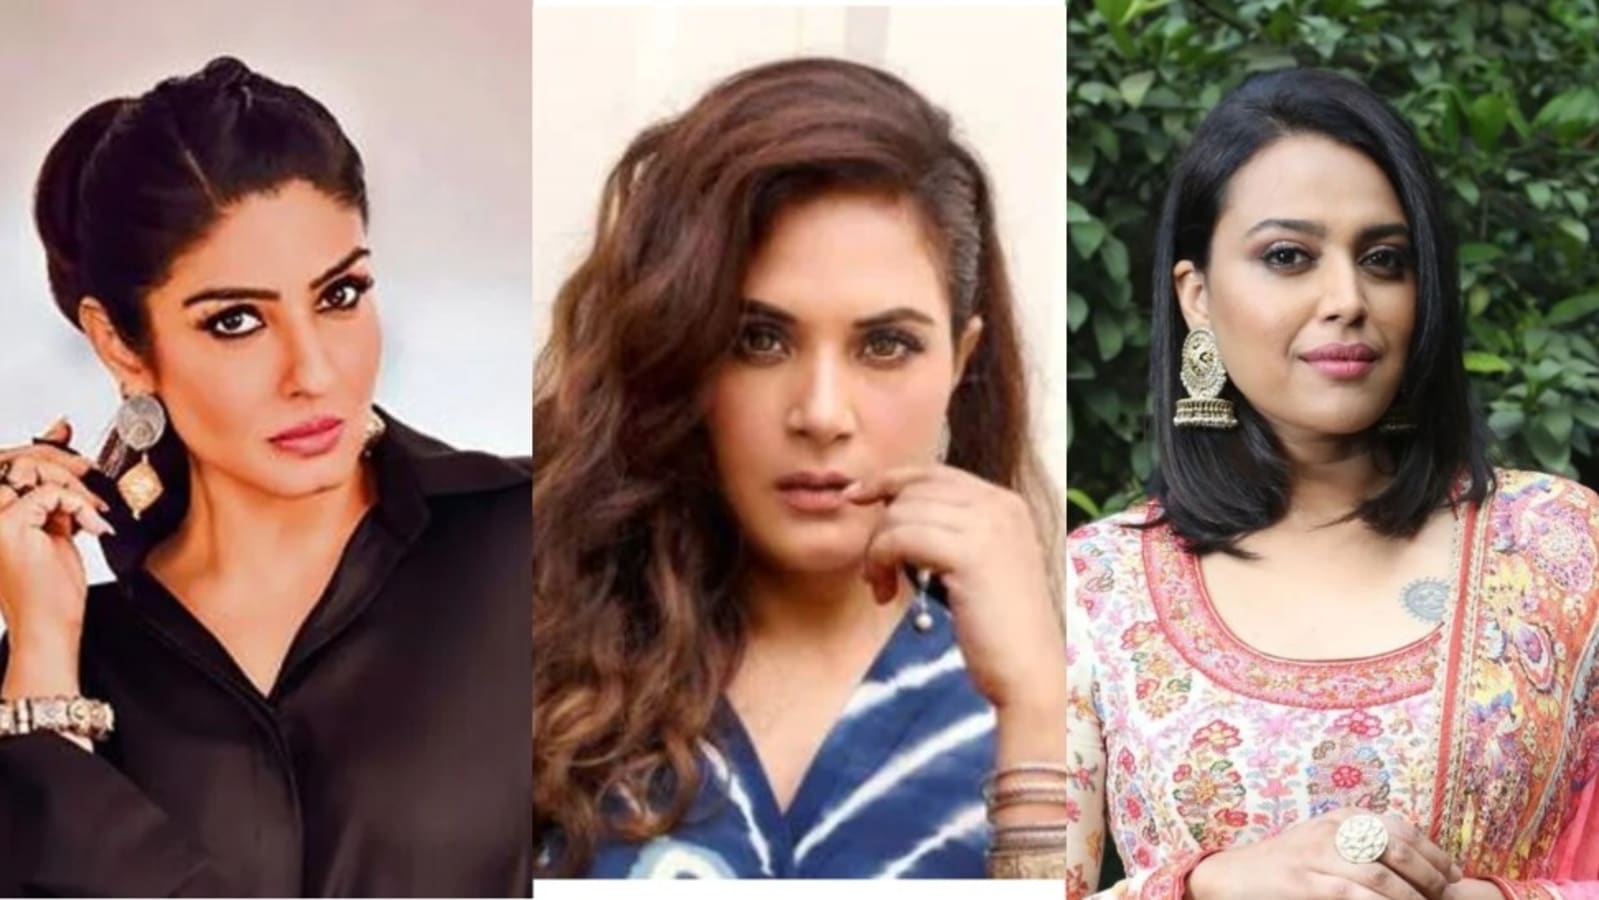 Raveena Tandonxxxx - Raveena Tandon, Swara Bhasker react to Richa Chadha's Galwan tweet: 'This  hateâ€¦' | Bollywood - Hindustan Times